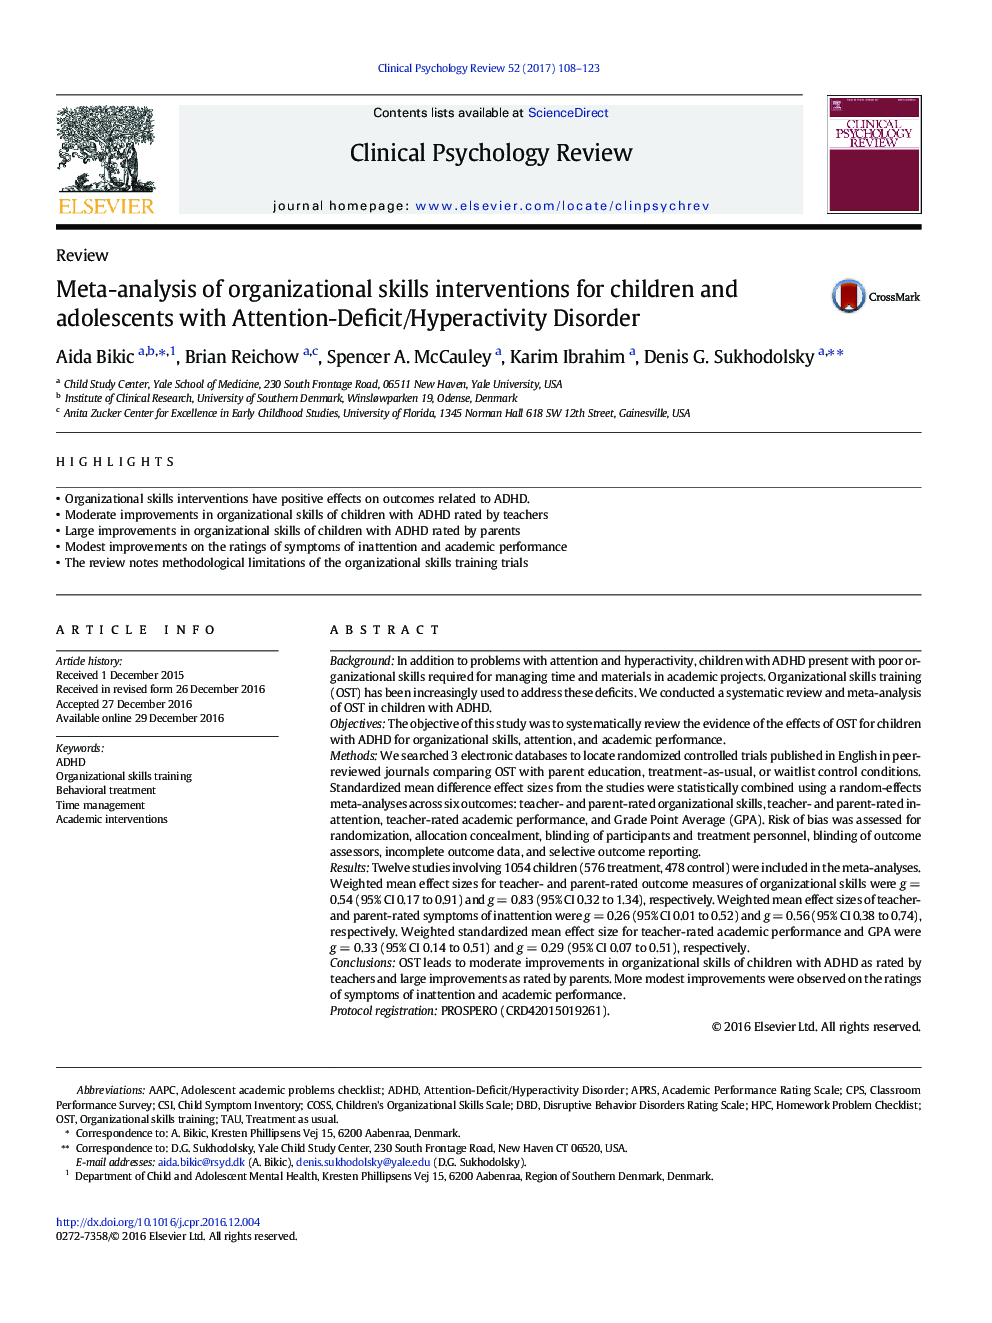 متاآنالیز مداخلات مهارت های سازمانی برای کودکان و نوجوانان مبتلا به اختلال کمبود توجه / بیش فعالی 